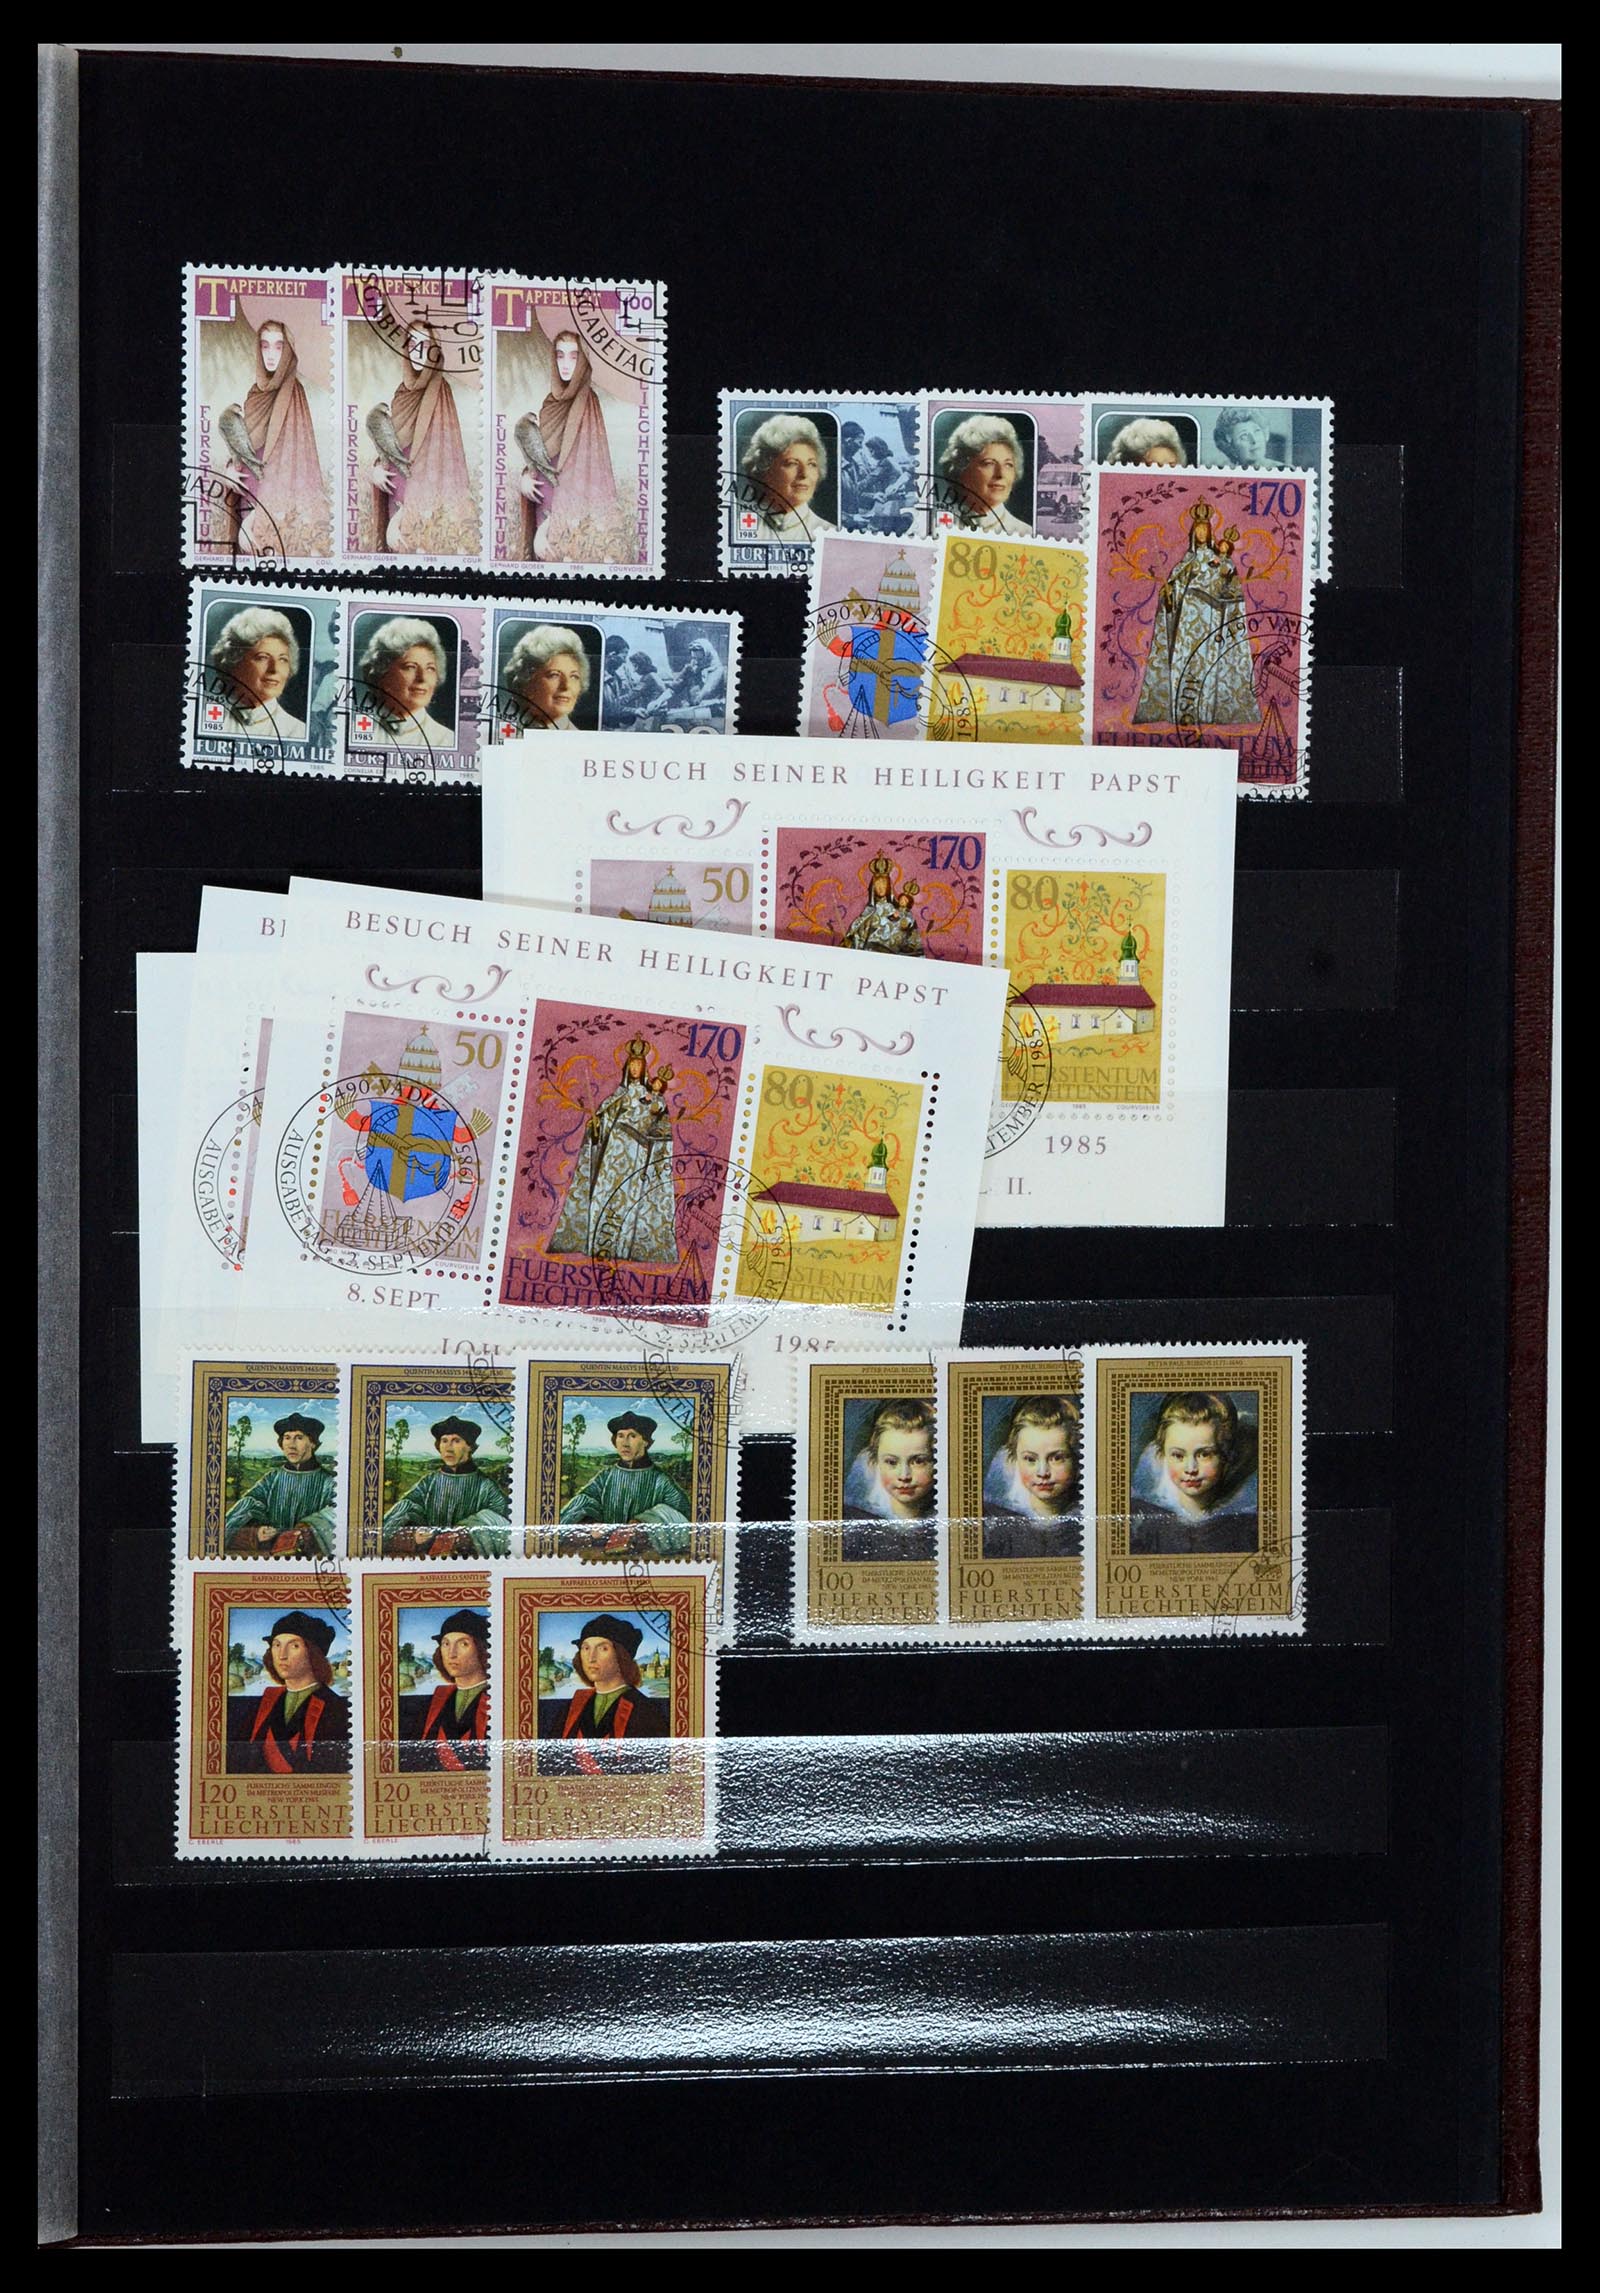 36697 042 - Stamp collection 36697 Liechtenstein 1912-1985.